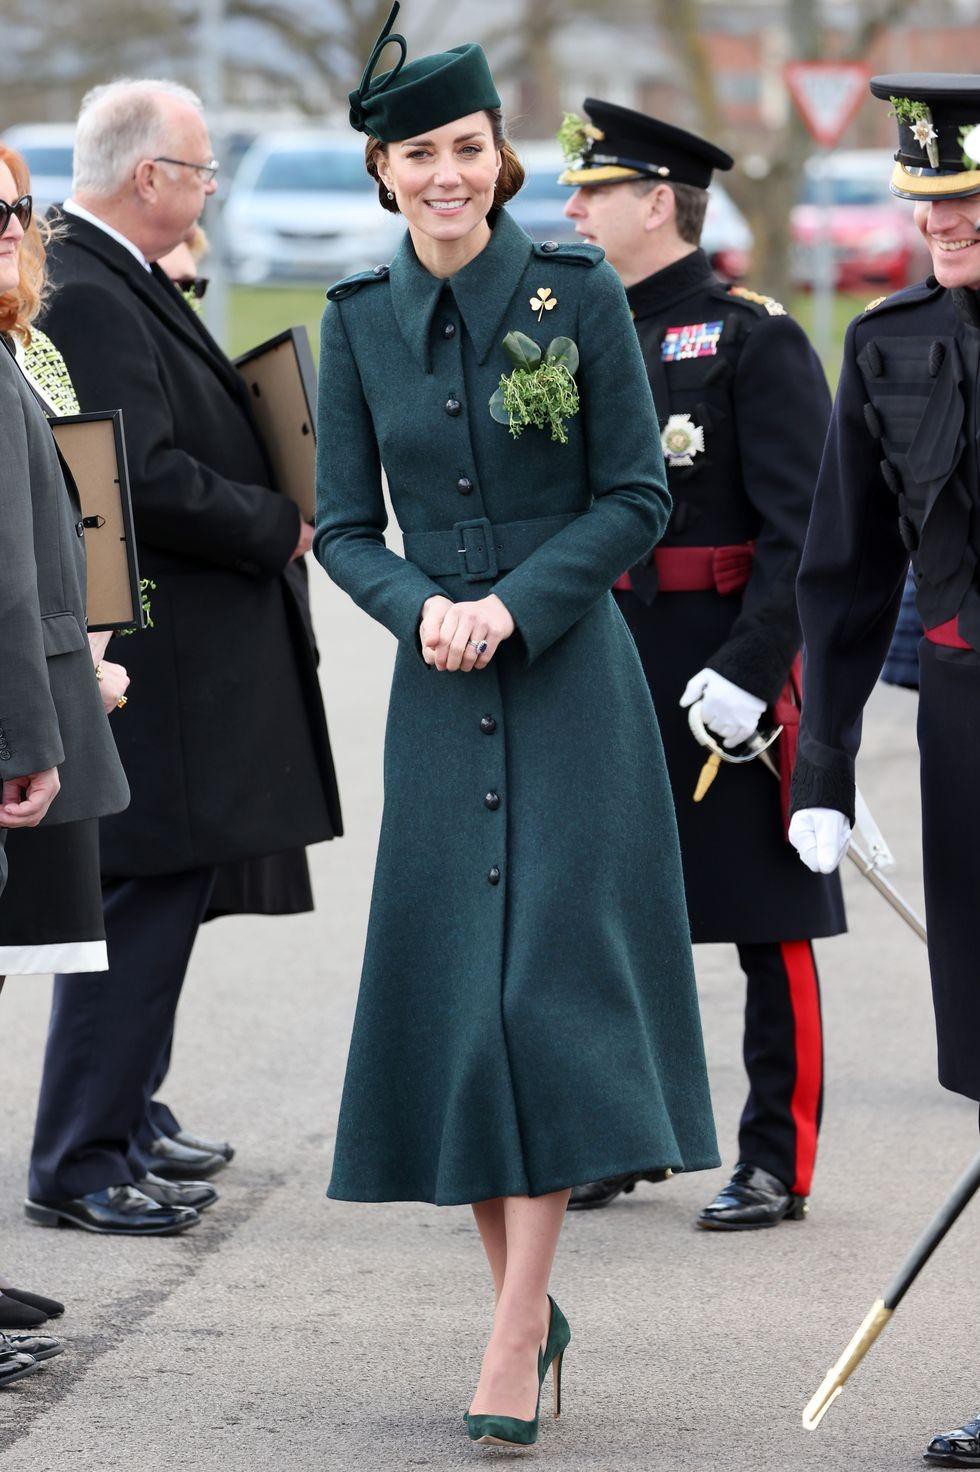 Ngắm những trang phục đẹp thanh lịch của 'Biểu tượng thời trang Hoàng gia' - Công nương Kate - Ảnh 12.